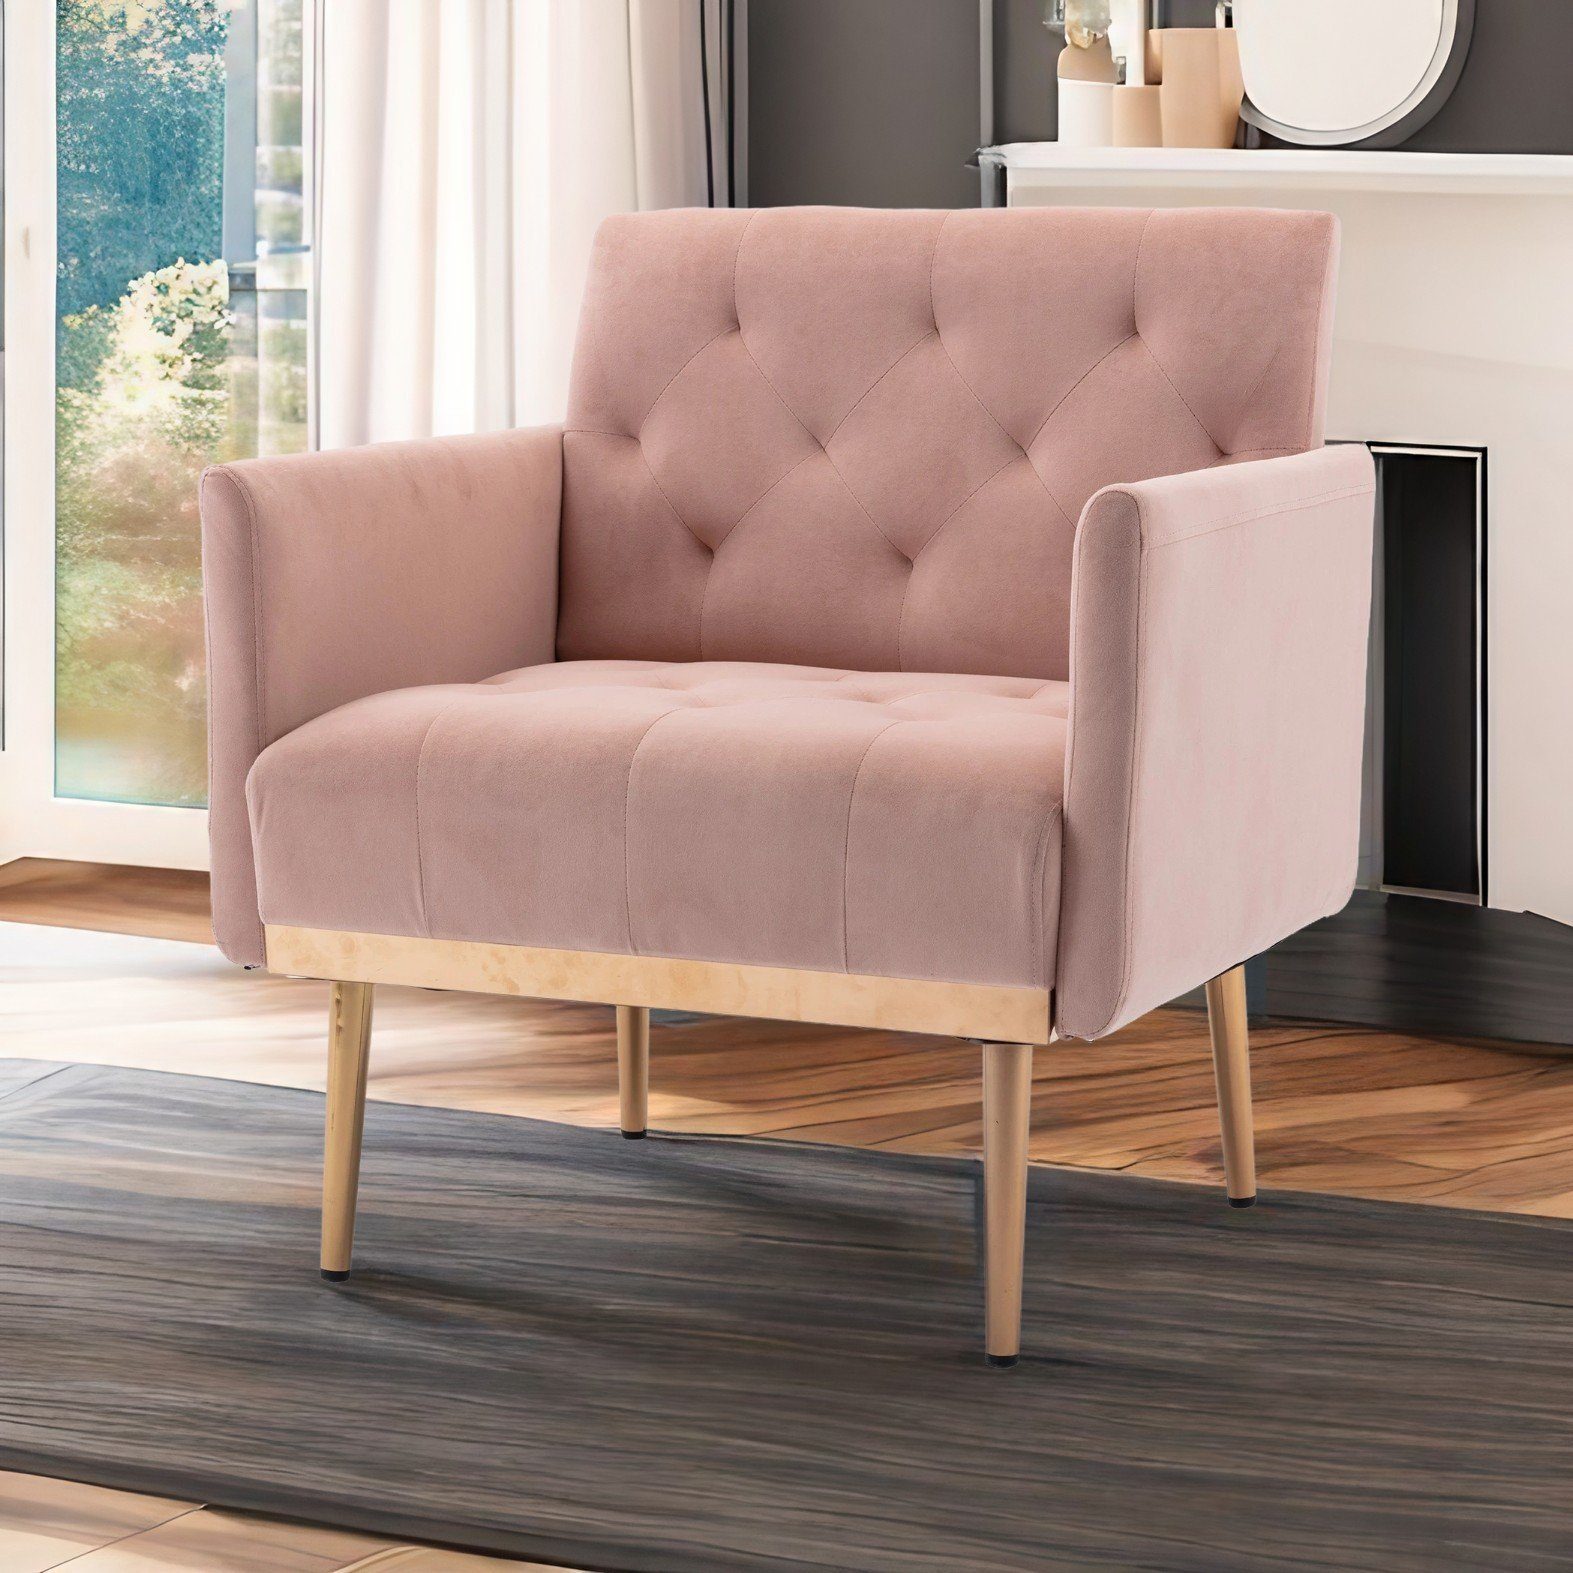 REDOM Esszimmerstuhl Freizeitsessel mit roségoldenen Füßen,Vierbeiniger Stuhl, Akzentstuhl rosa